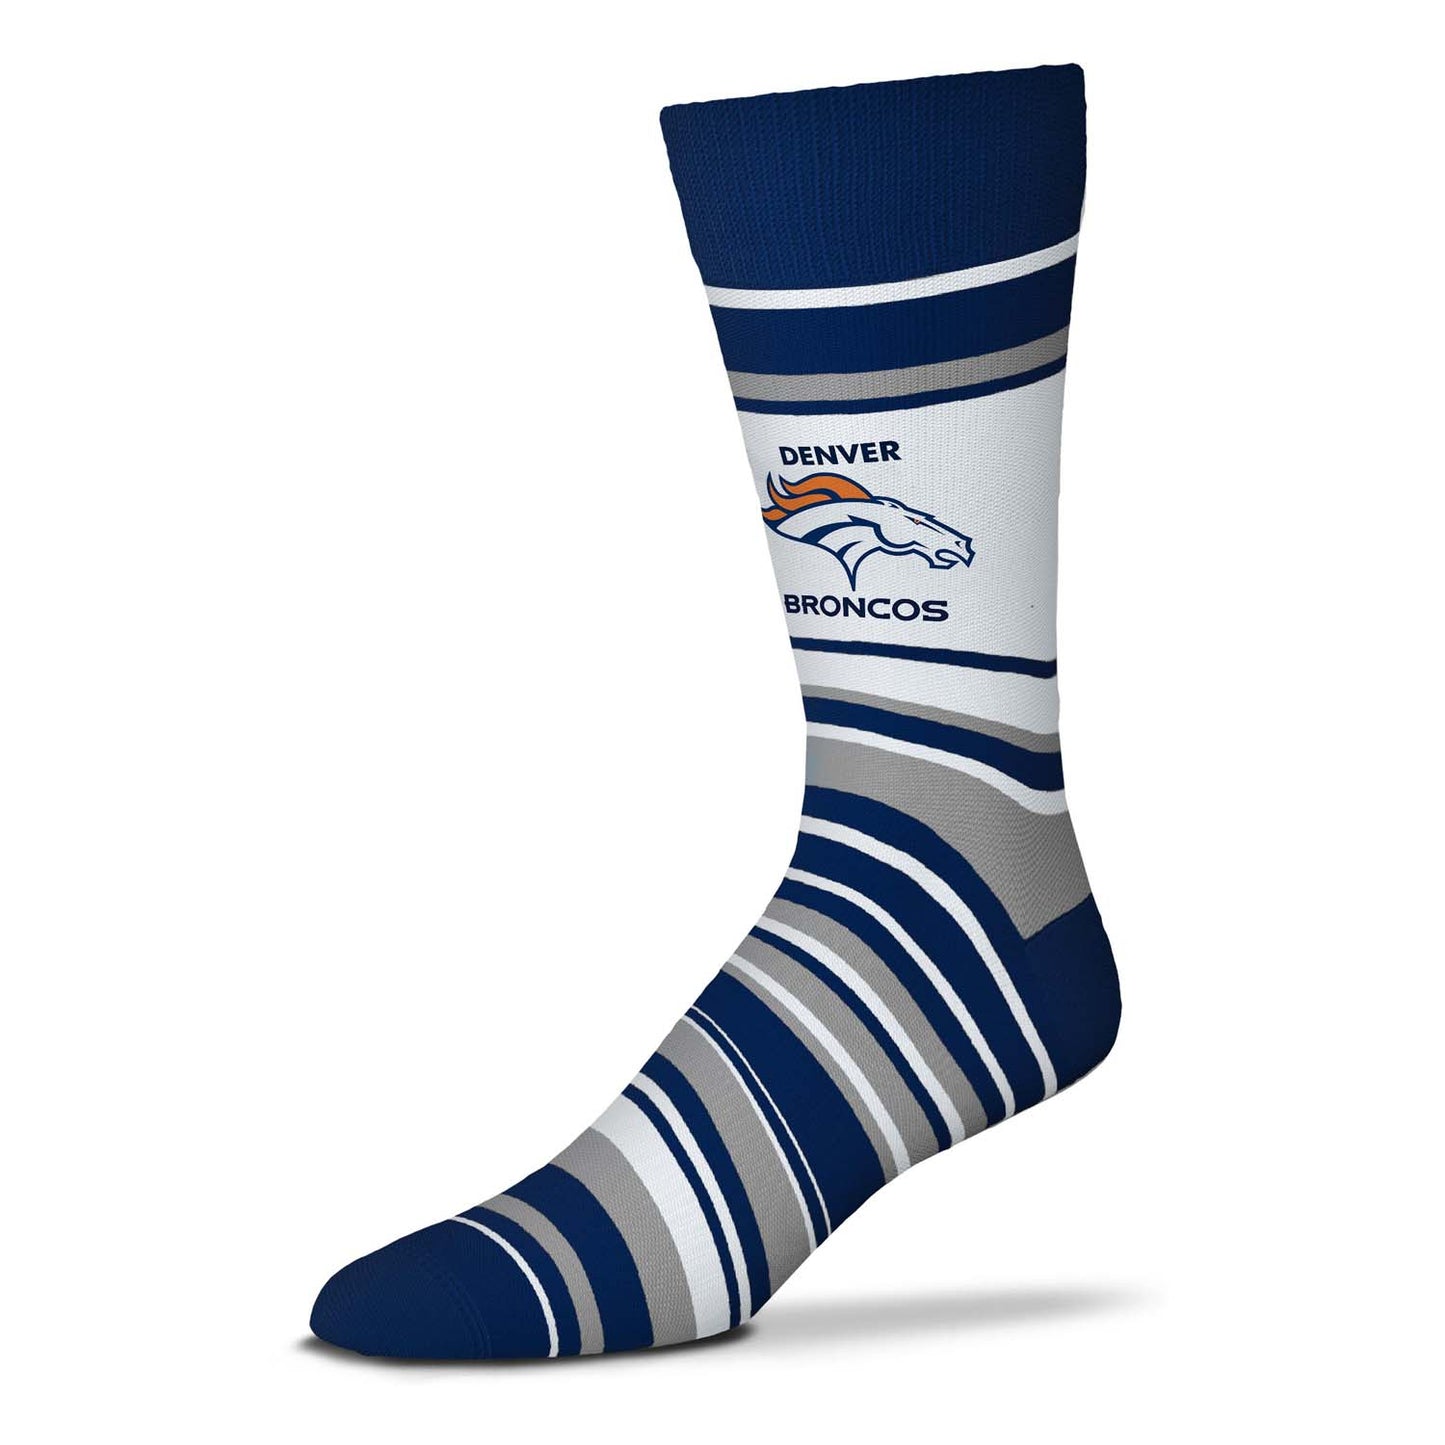 Denver Broncos NFL Adult Striped Dress Socks - Navy